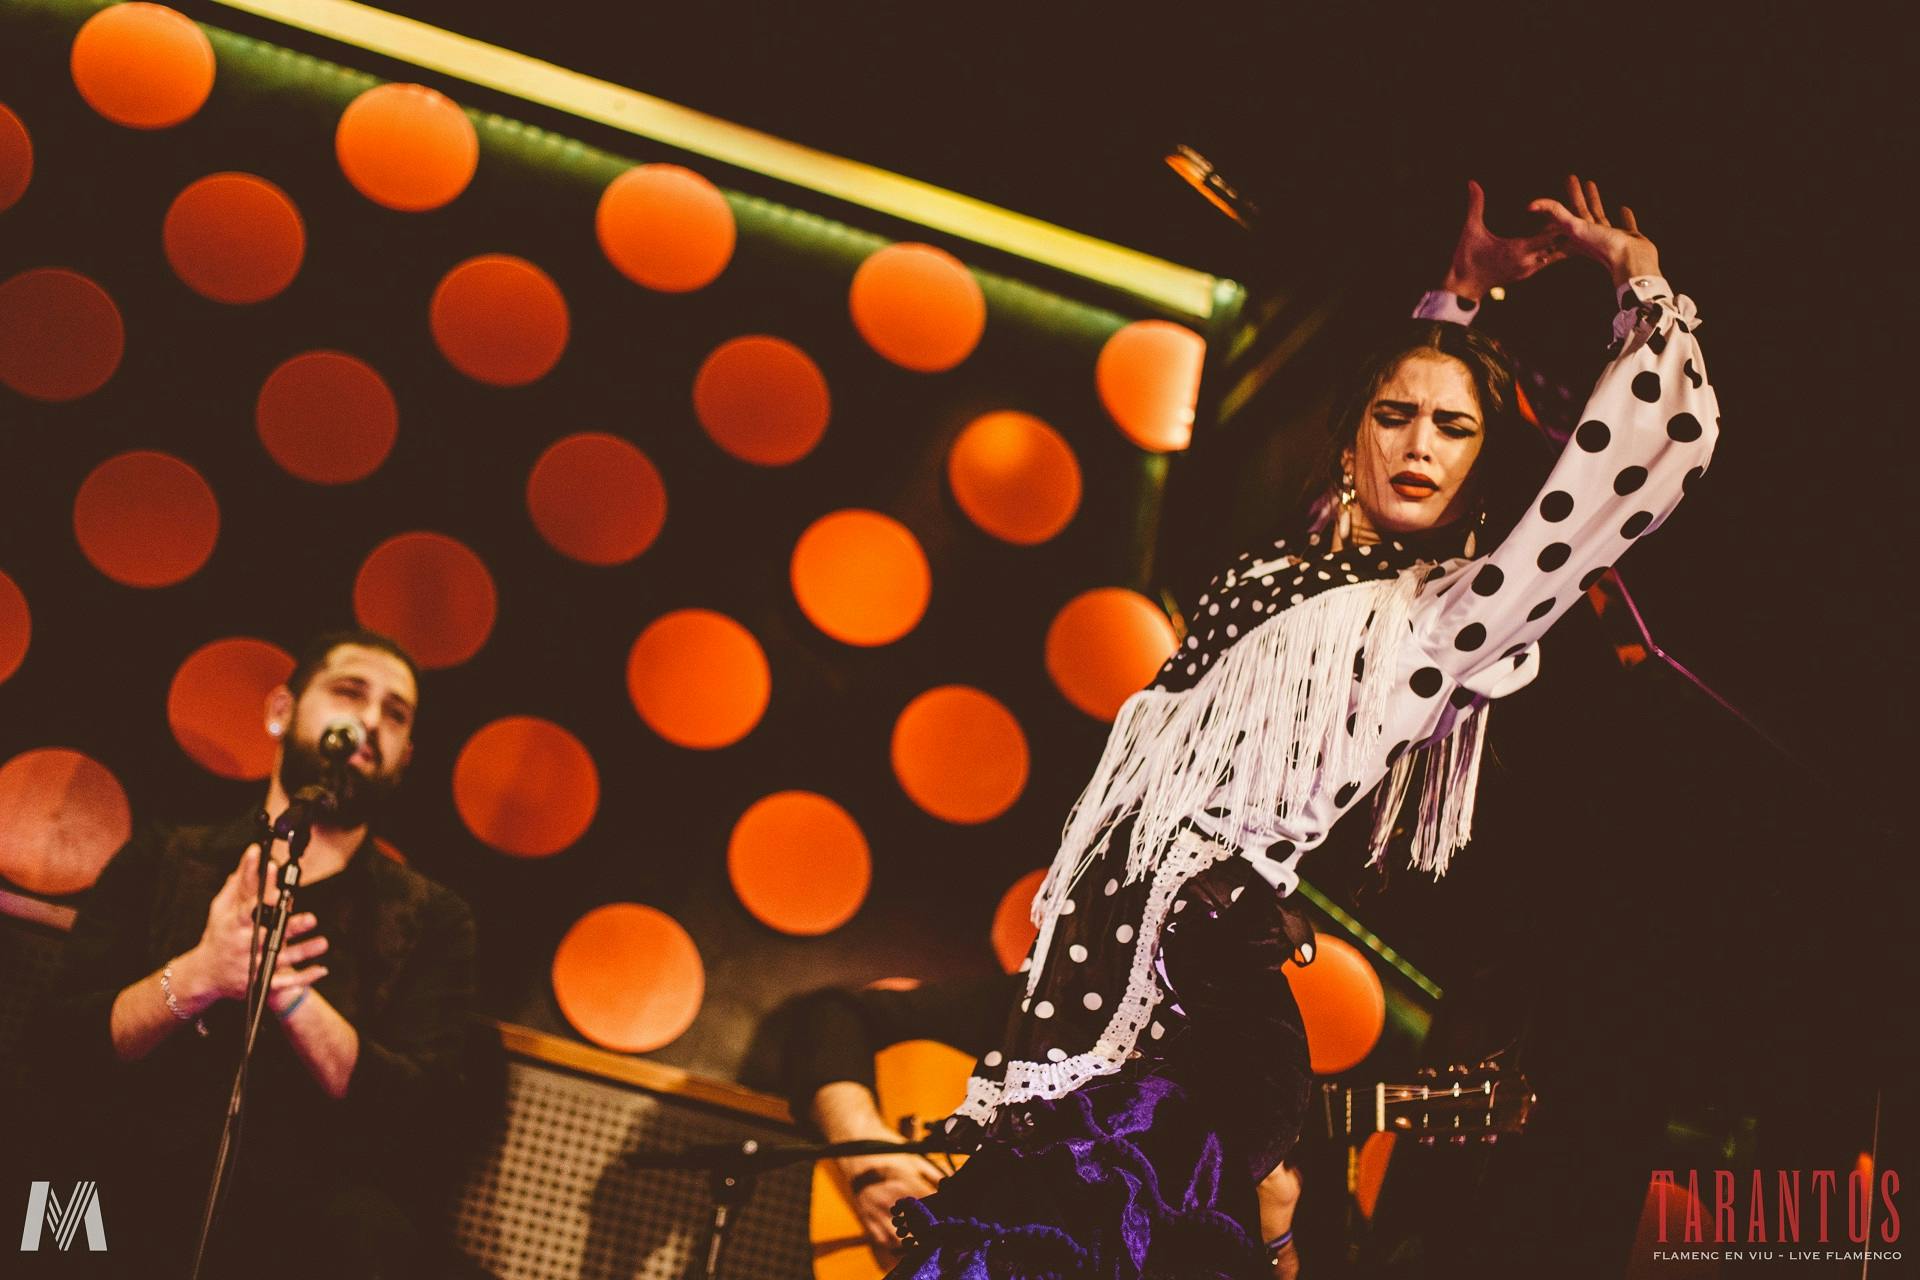 Los Tarantos flamenco show